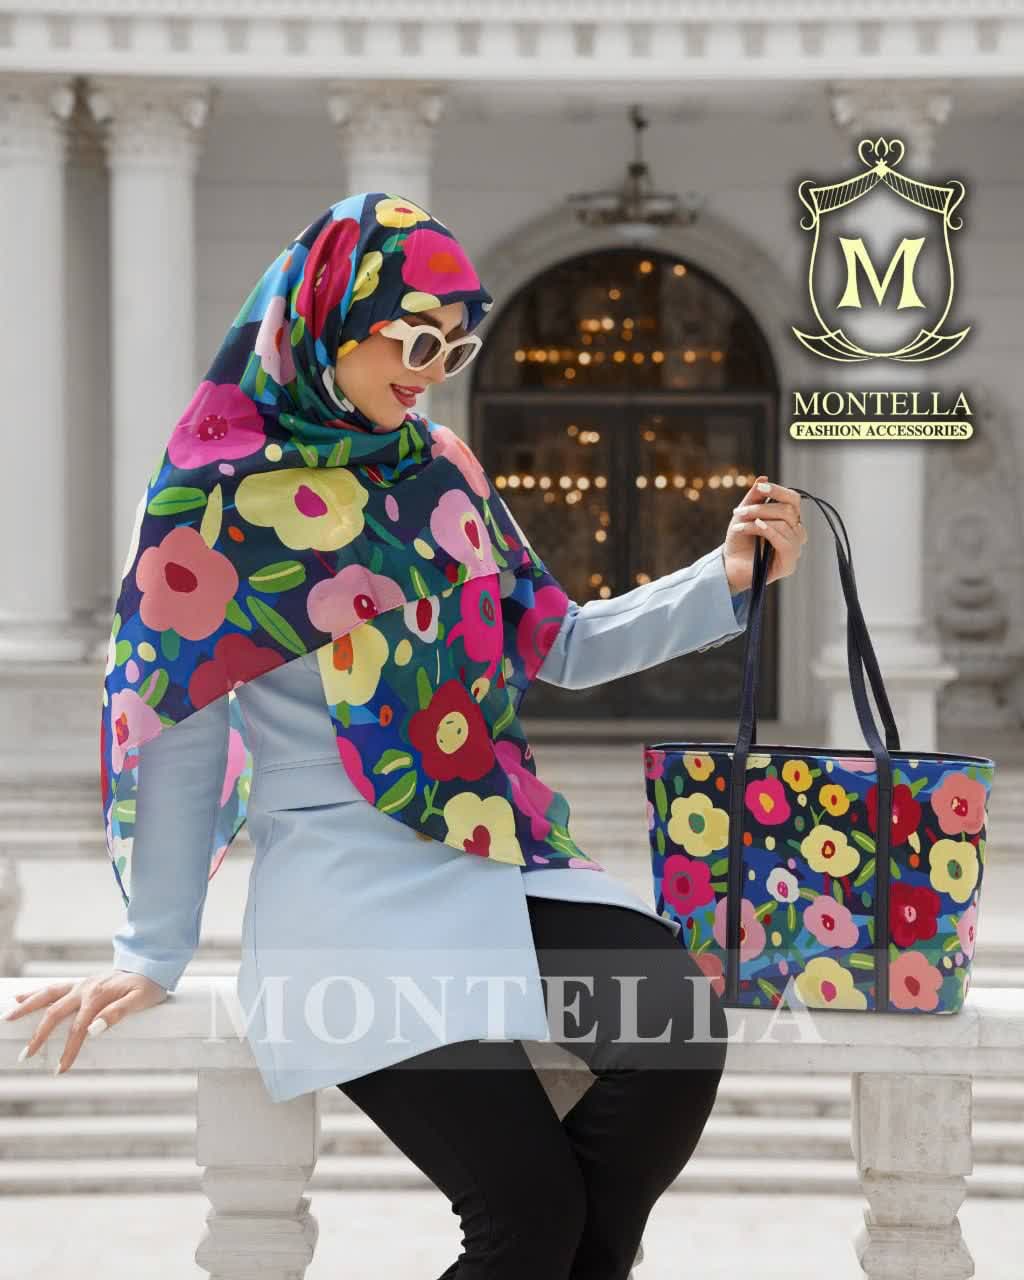 ست کیف و روسری زنانه طرح گل رنگی باکیفیت با کیف مستطیلی بزرگ ارسال رایگان کد mo227